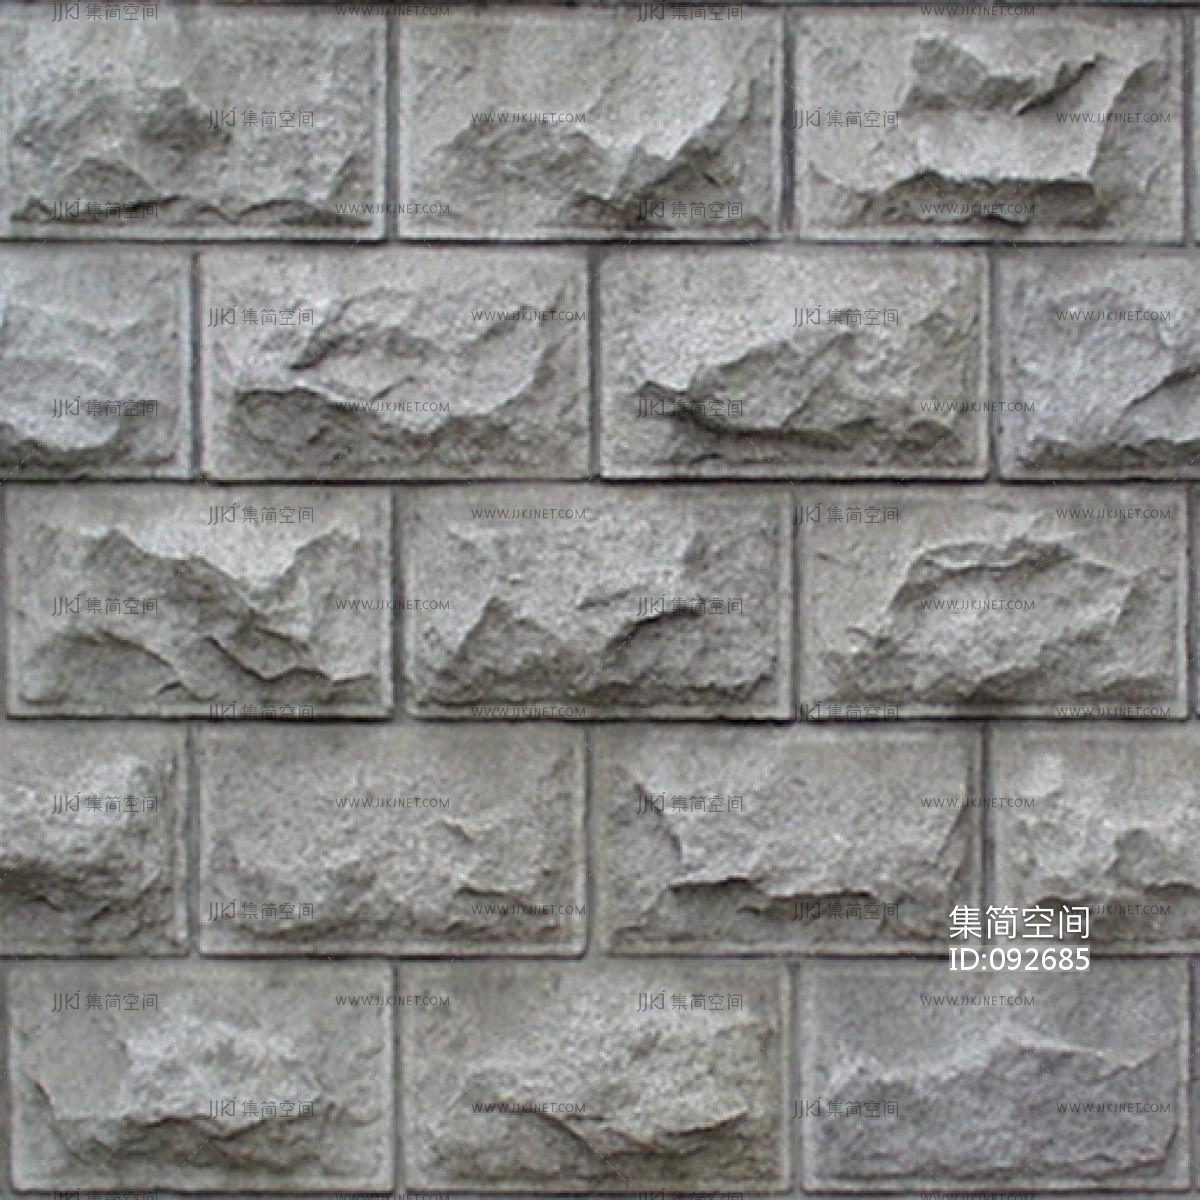 真岩石-工程案例-真岩|真岩石|无机石材装饰板|外墙石材装饰板|外墙装饰板|外墙保温装饰板|仿石板|大自然石材|河北大自然石材有限公司